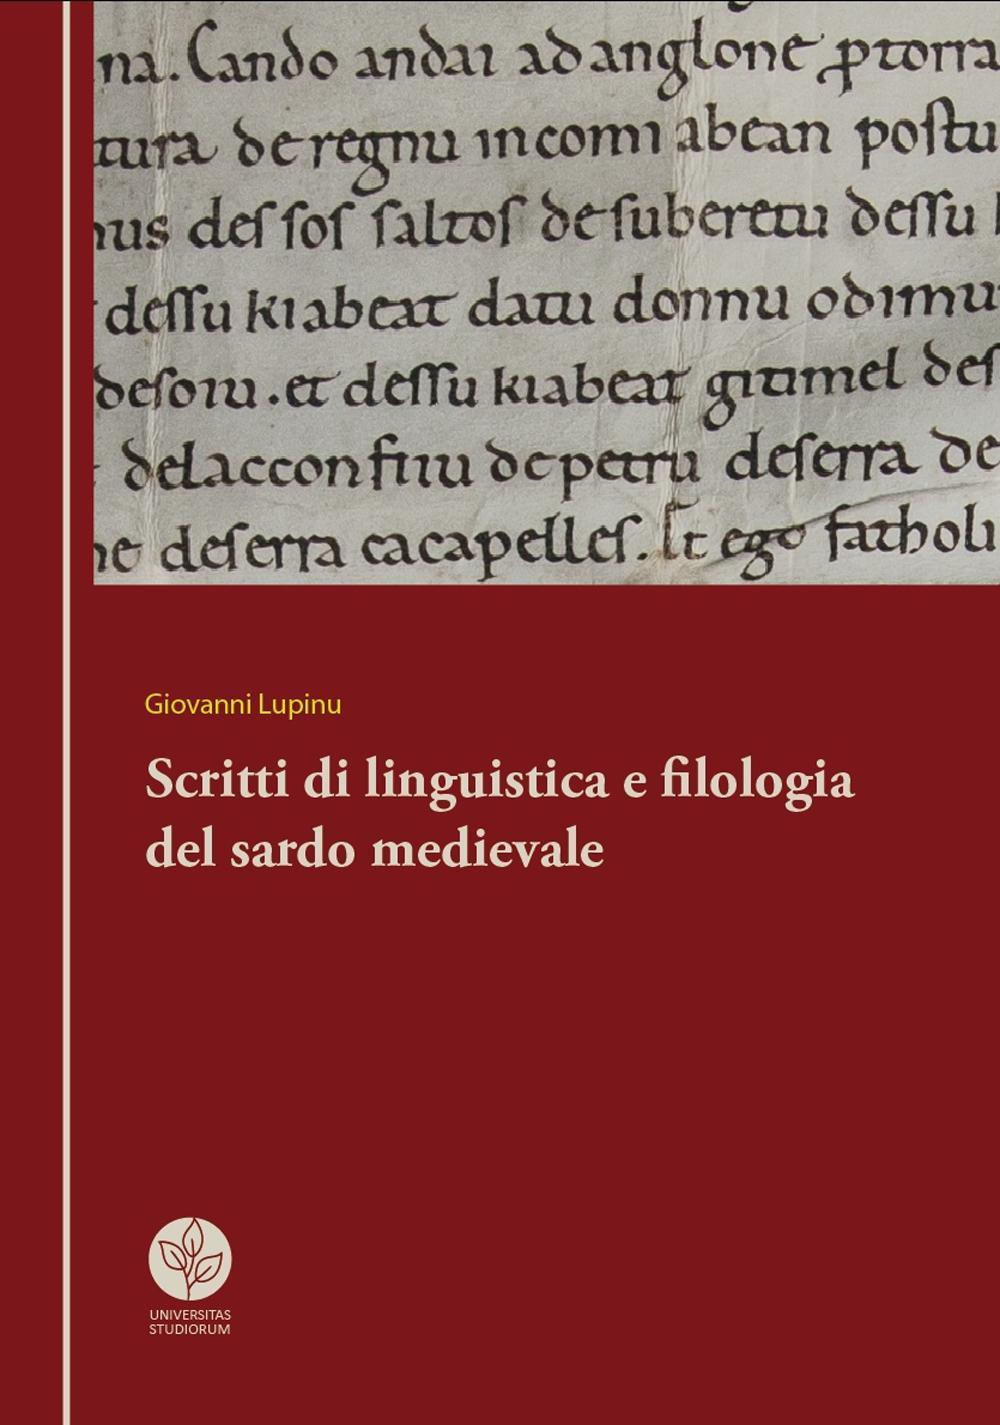 Scritti di linguistica e filologia del sardo medievale